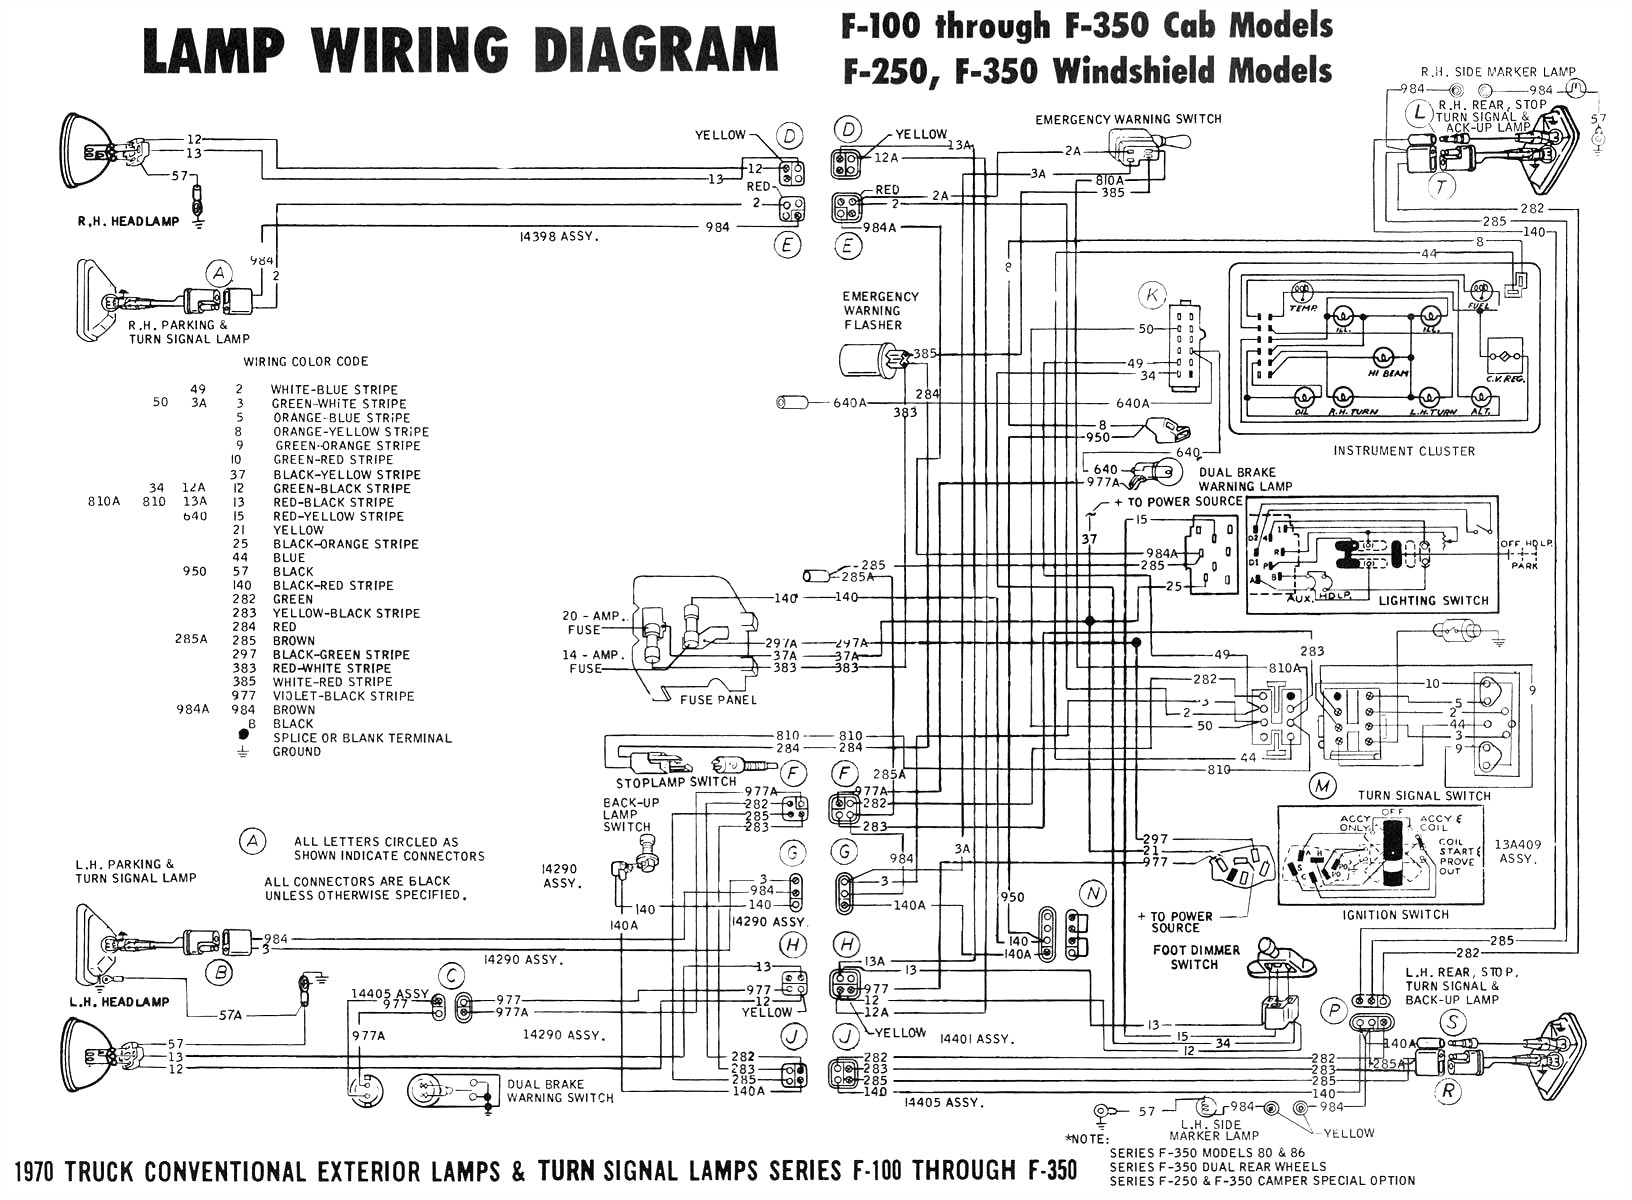 1993 silverado stereo diagram autos weblog wiring diagram page 1993 silverado stereo diagram autos weblog